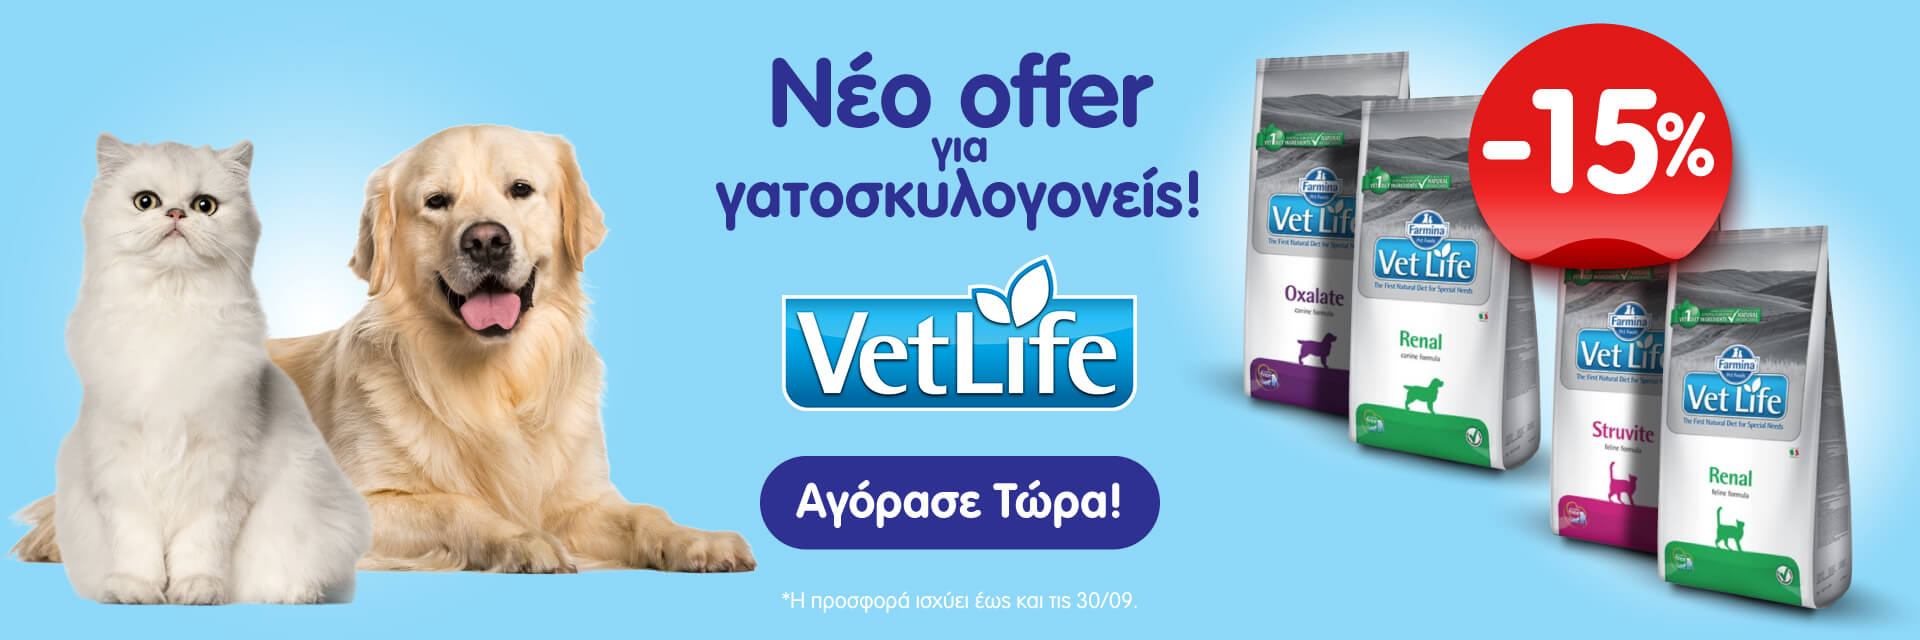 vetlife_offer